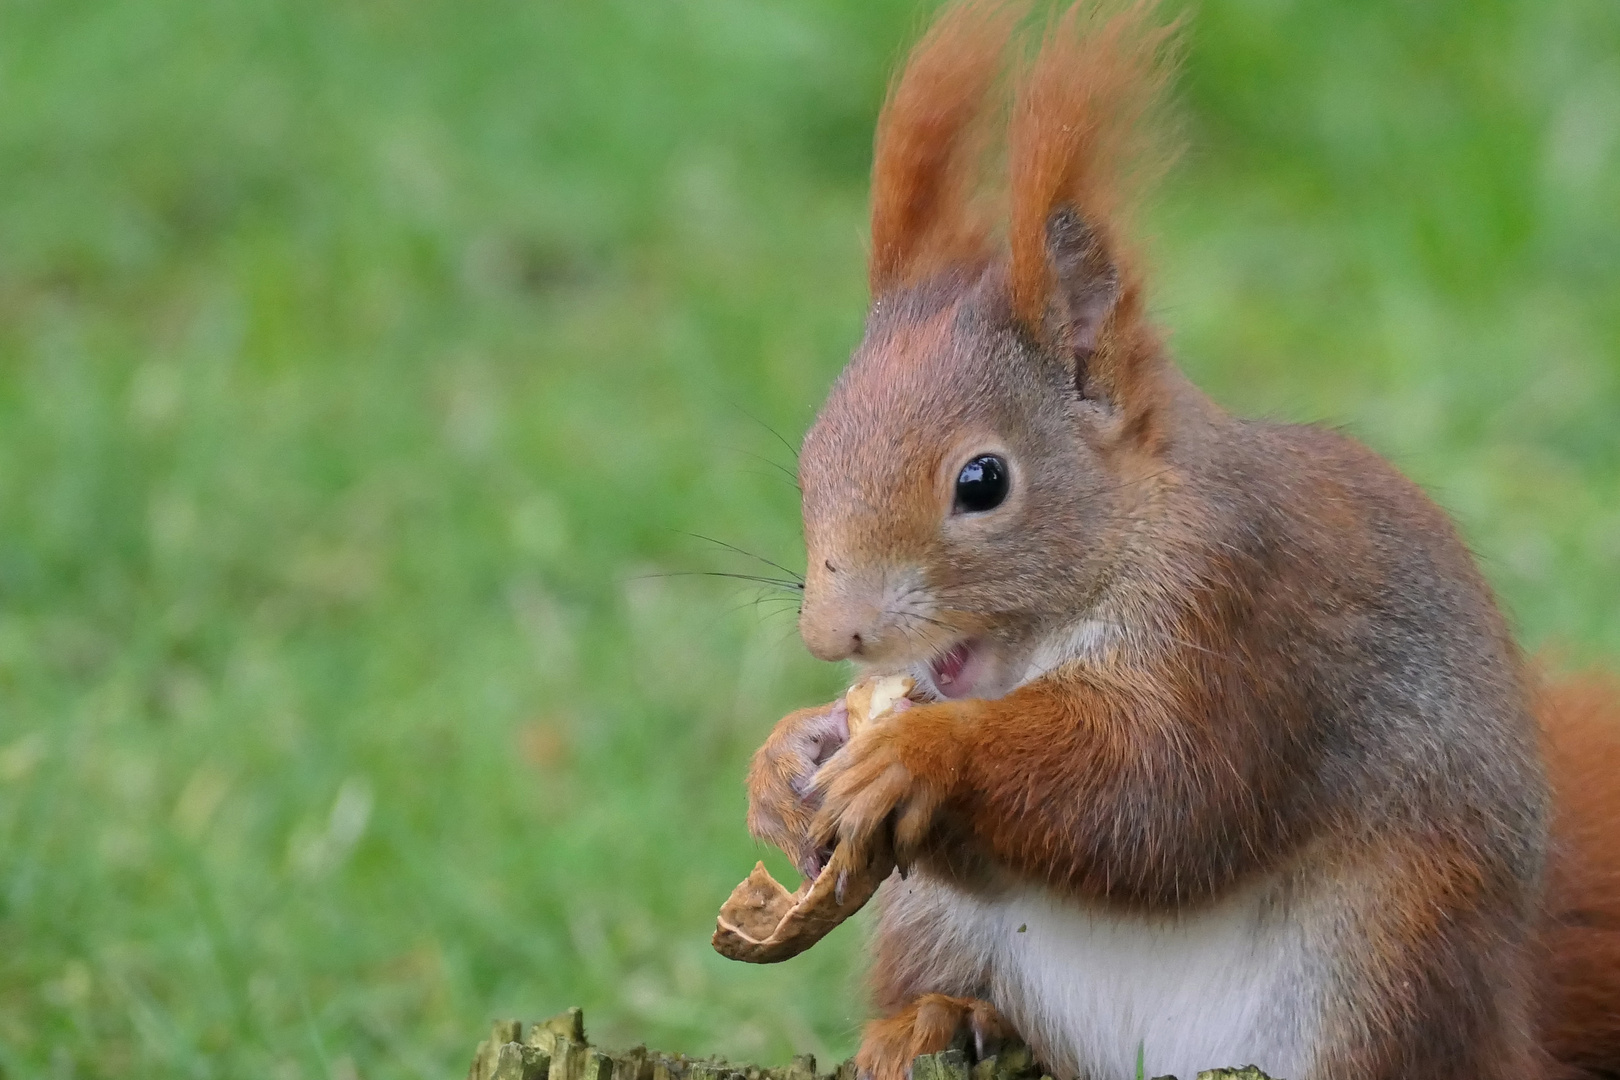 Eichhörnchen mit Nüssen in den Garten gelockt